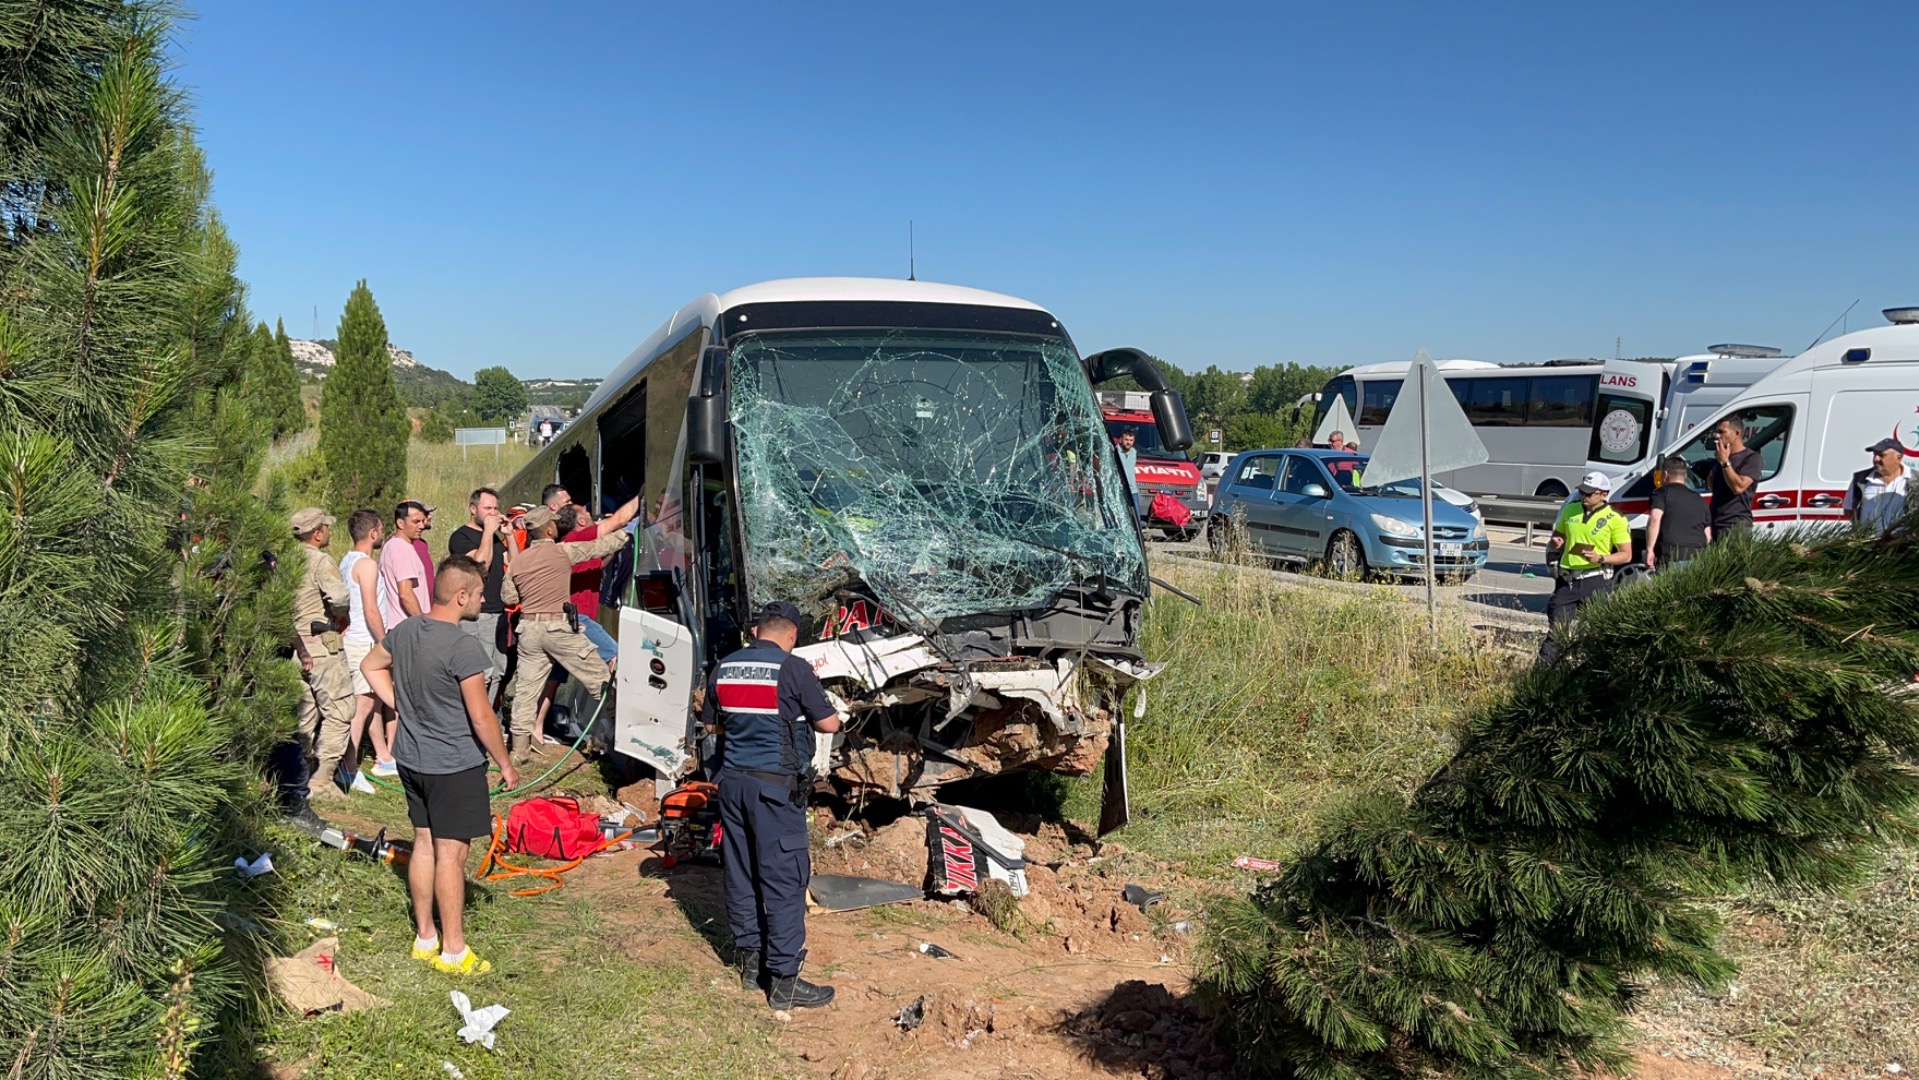 Eskişehir’e giden Bodrum otobüsü yoldan çıktı: 35 yaralı